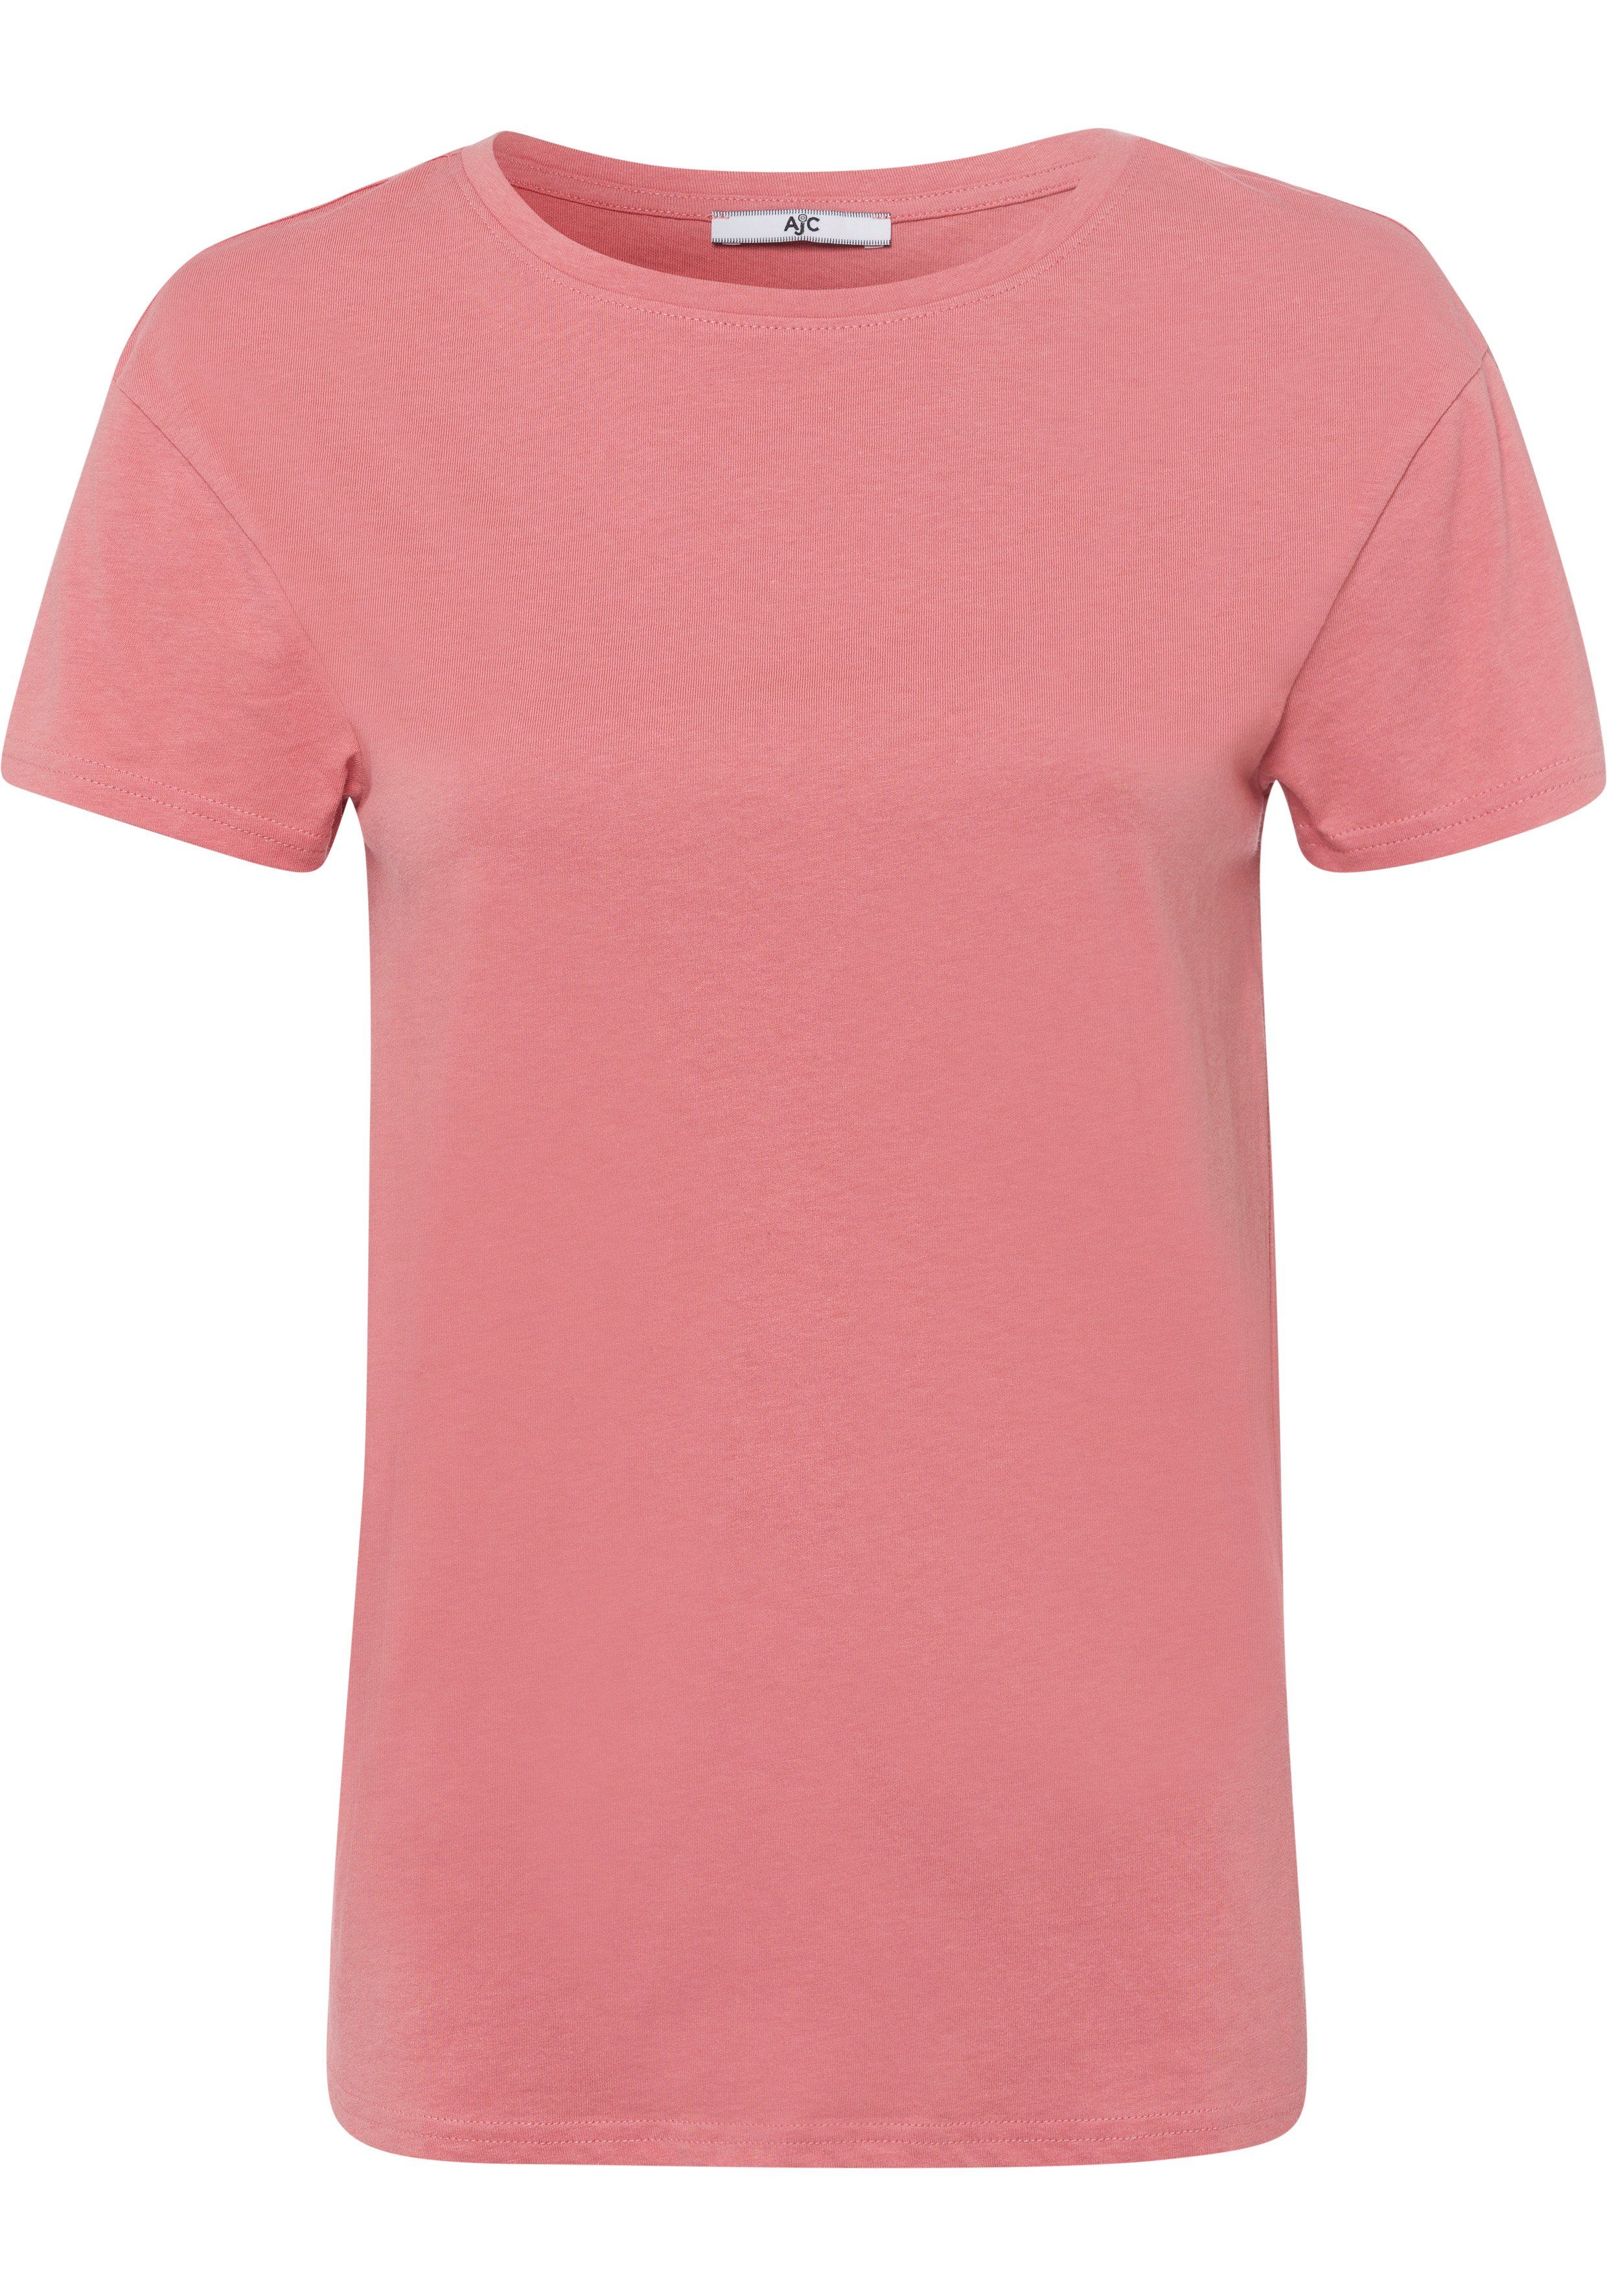 AJC T-Shirt Oversized-Look KOLLEKTION im - NEUE trendigen lachs